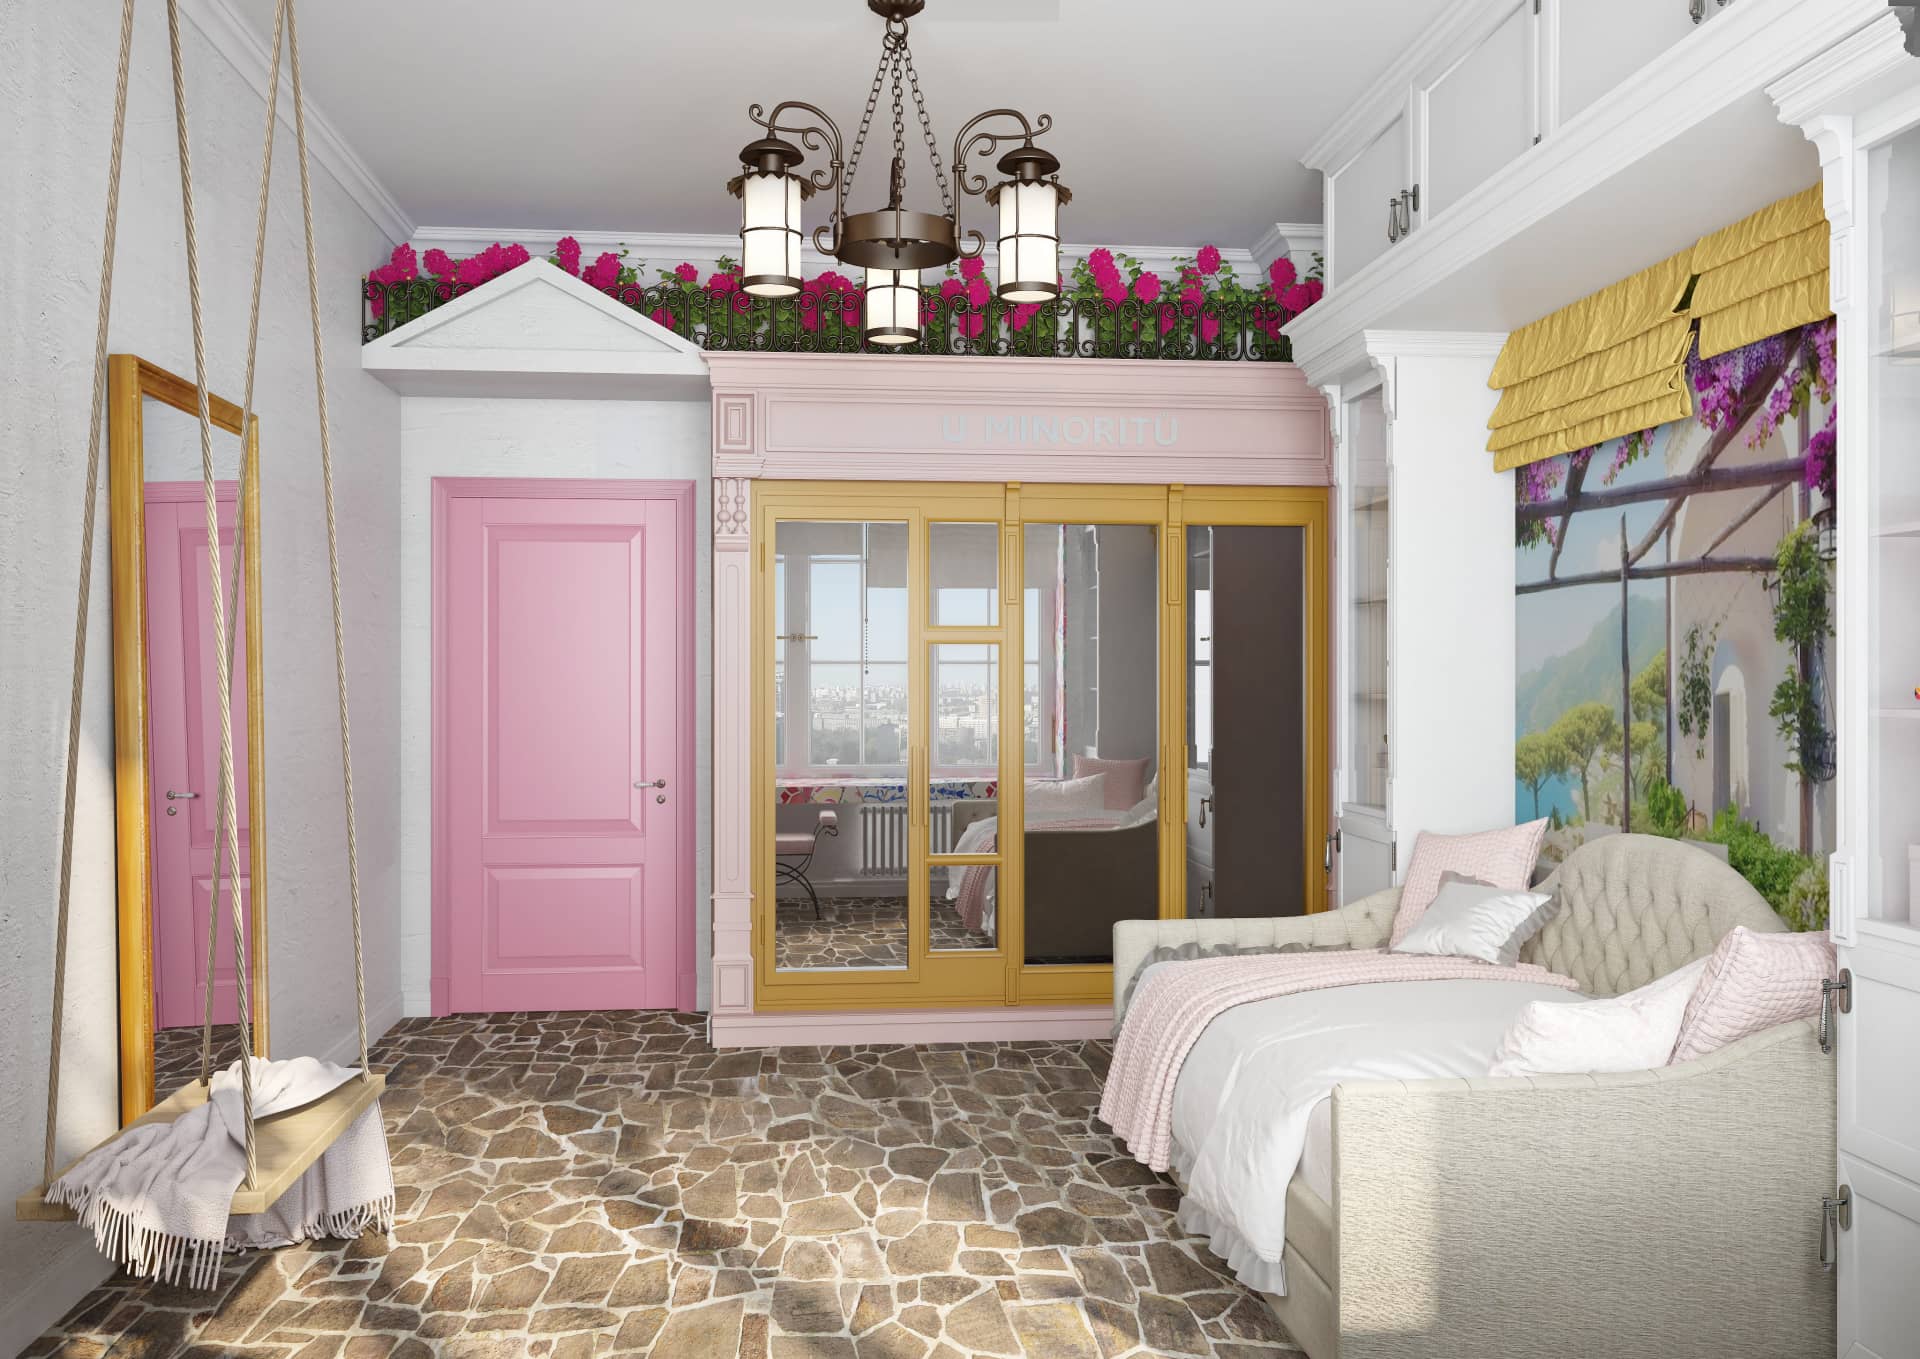 Дверь в комнату девочки выкрашена в светлый розовый цвет